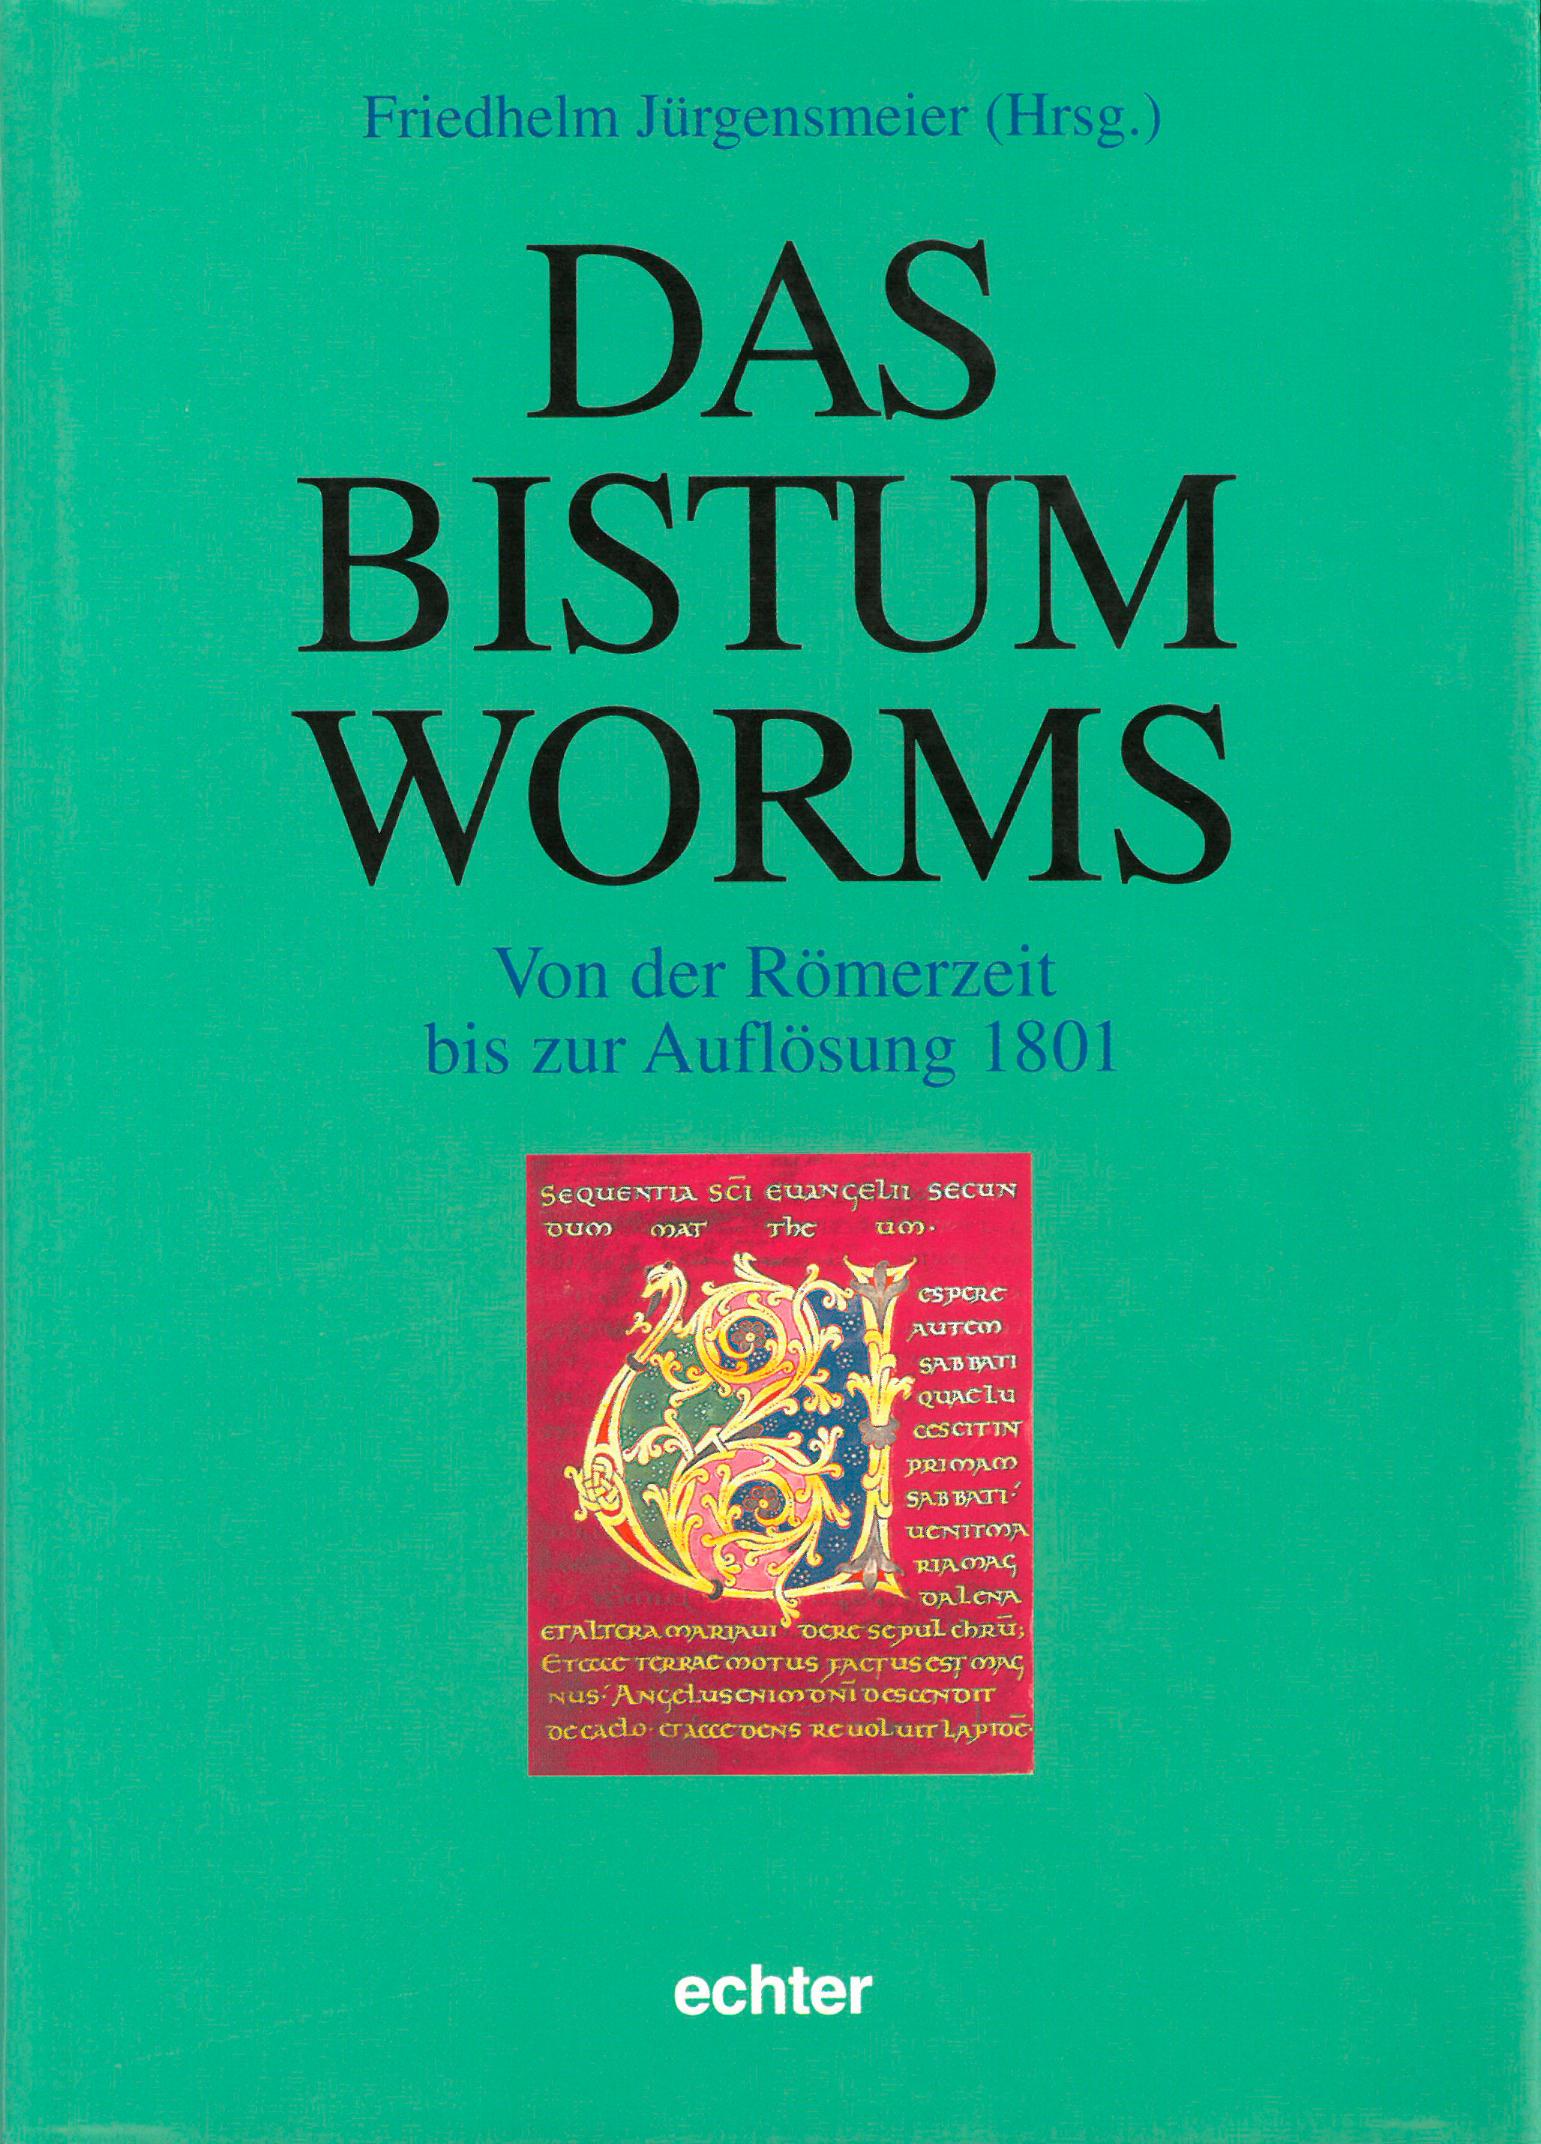 Worms (c) Echter / IMKG